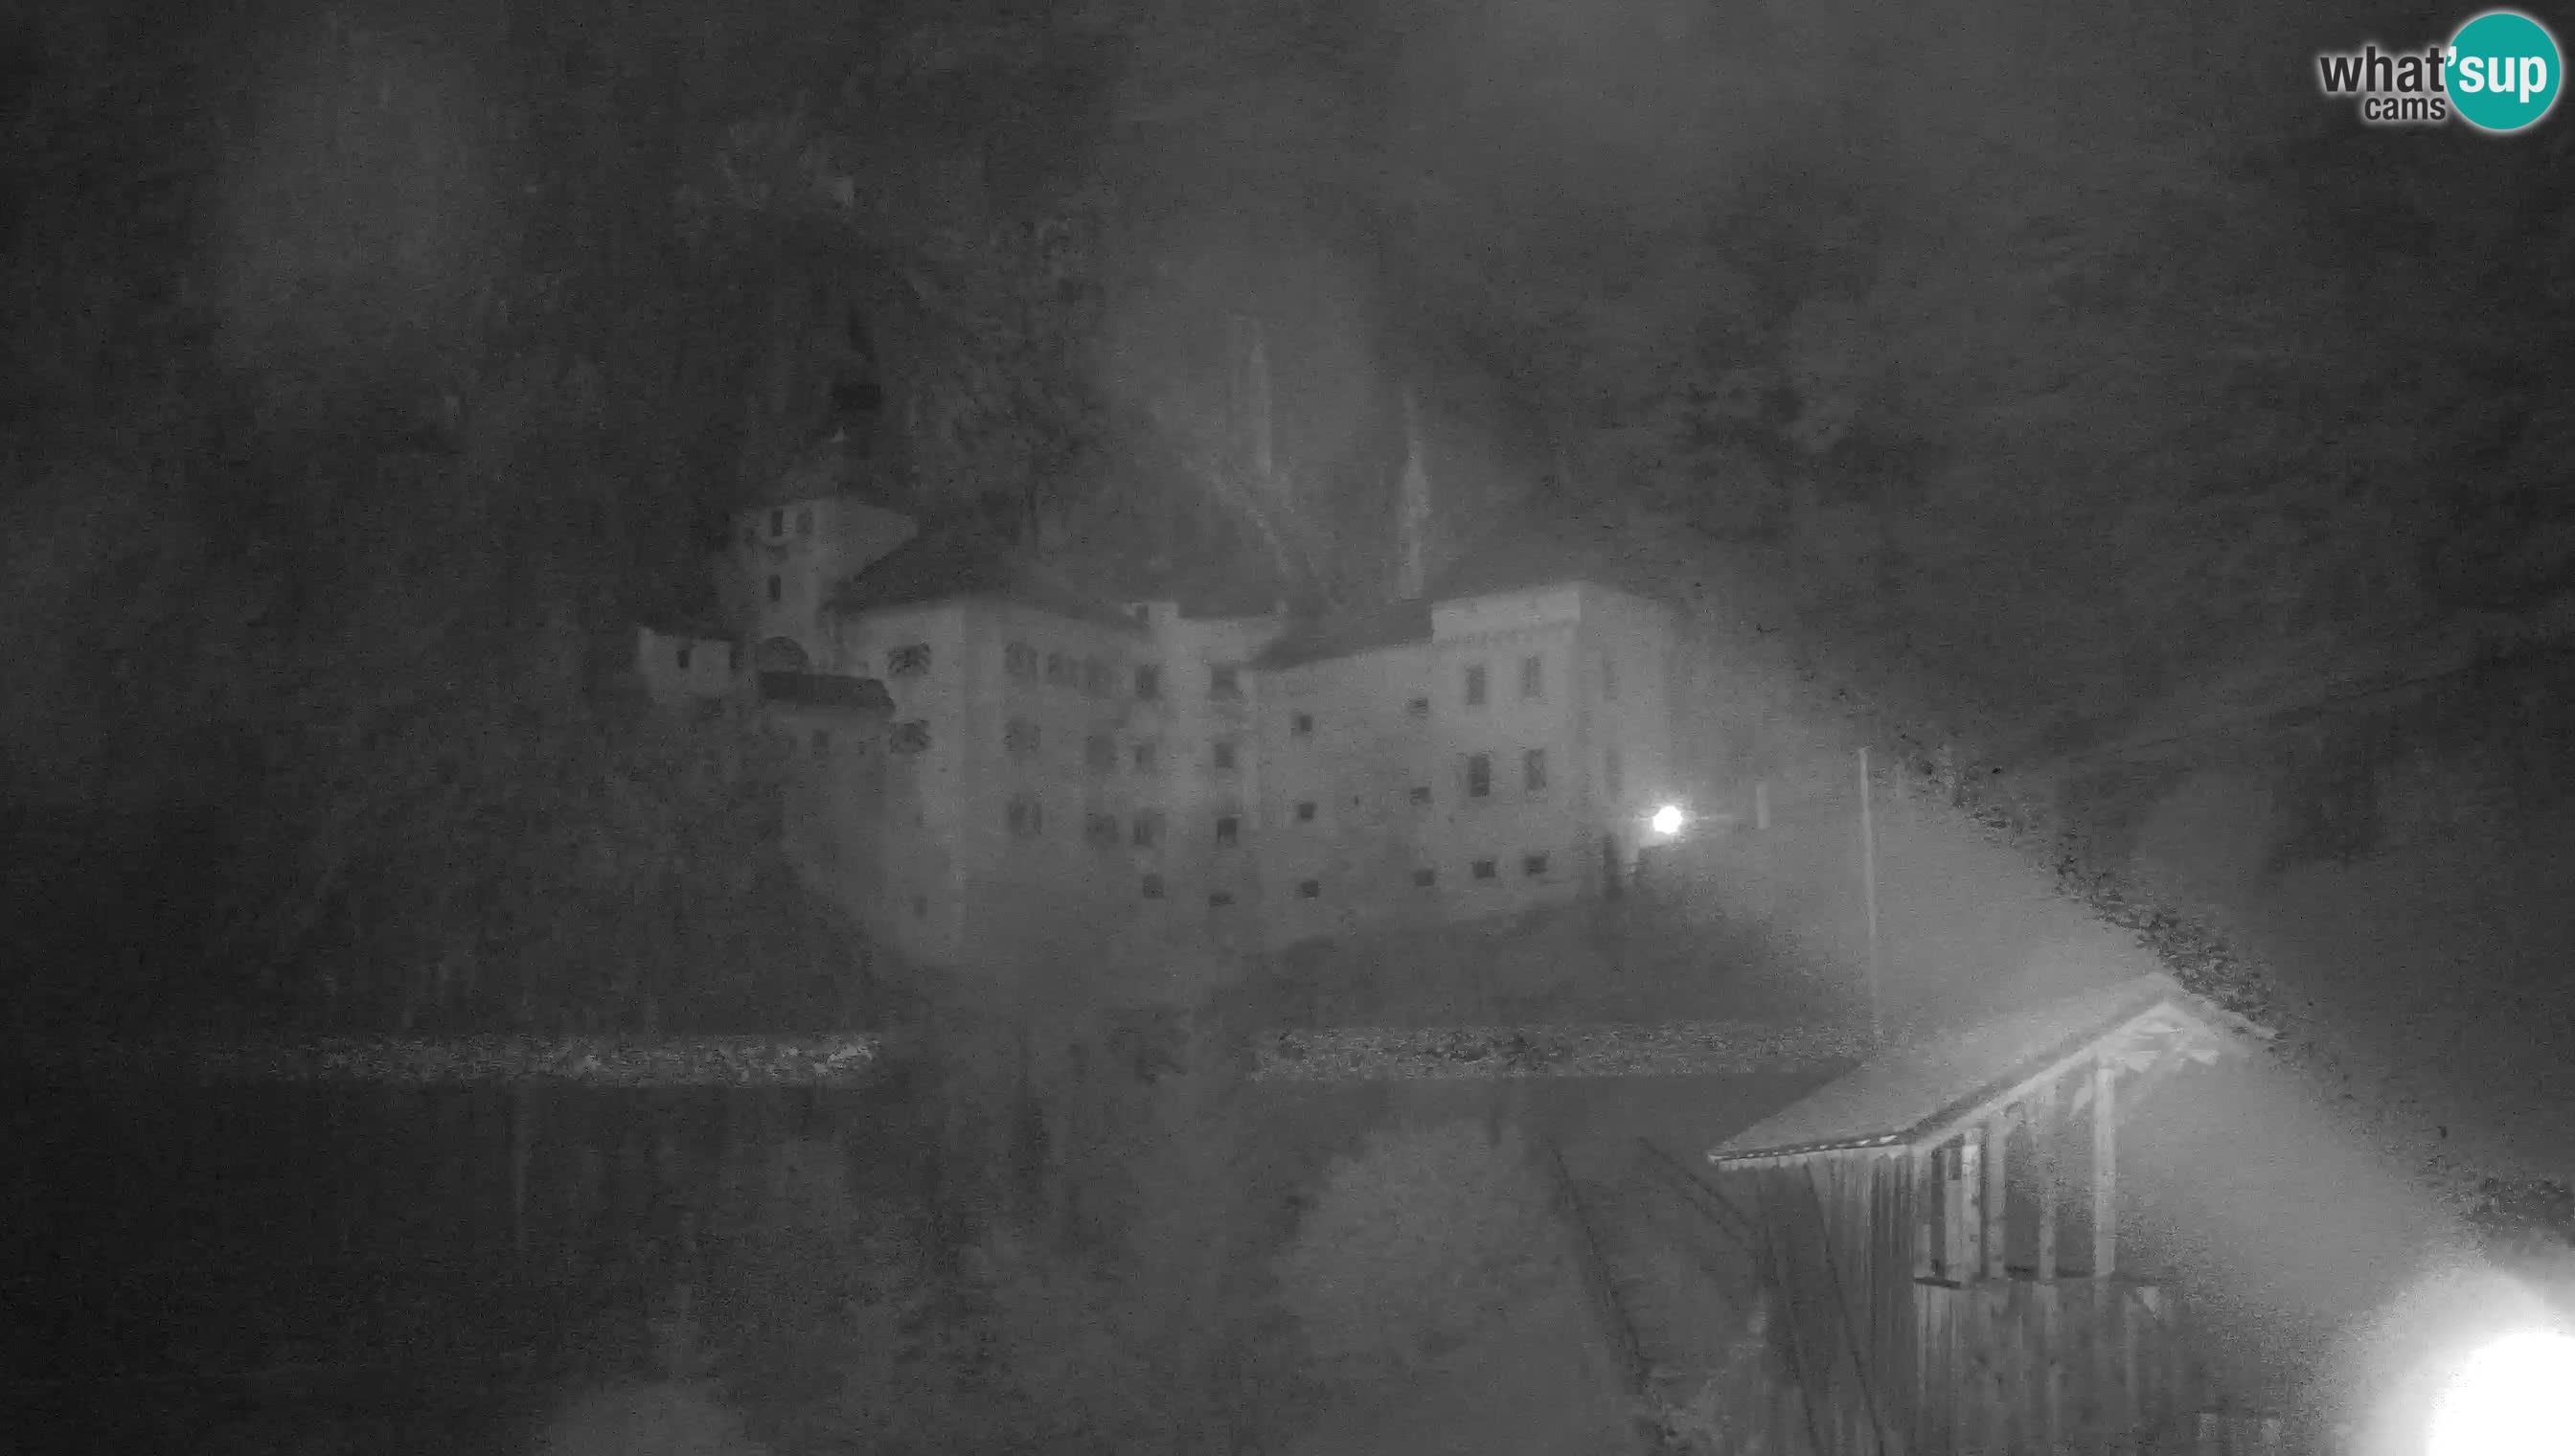 Camera en vivo Castillo de Predjama – Postojna – Eslovenia